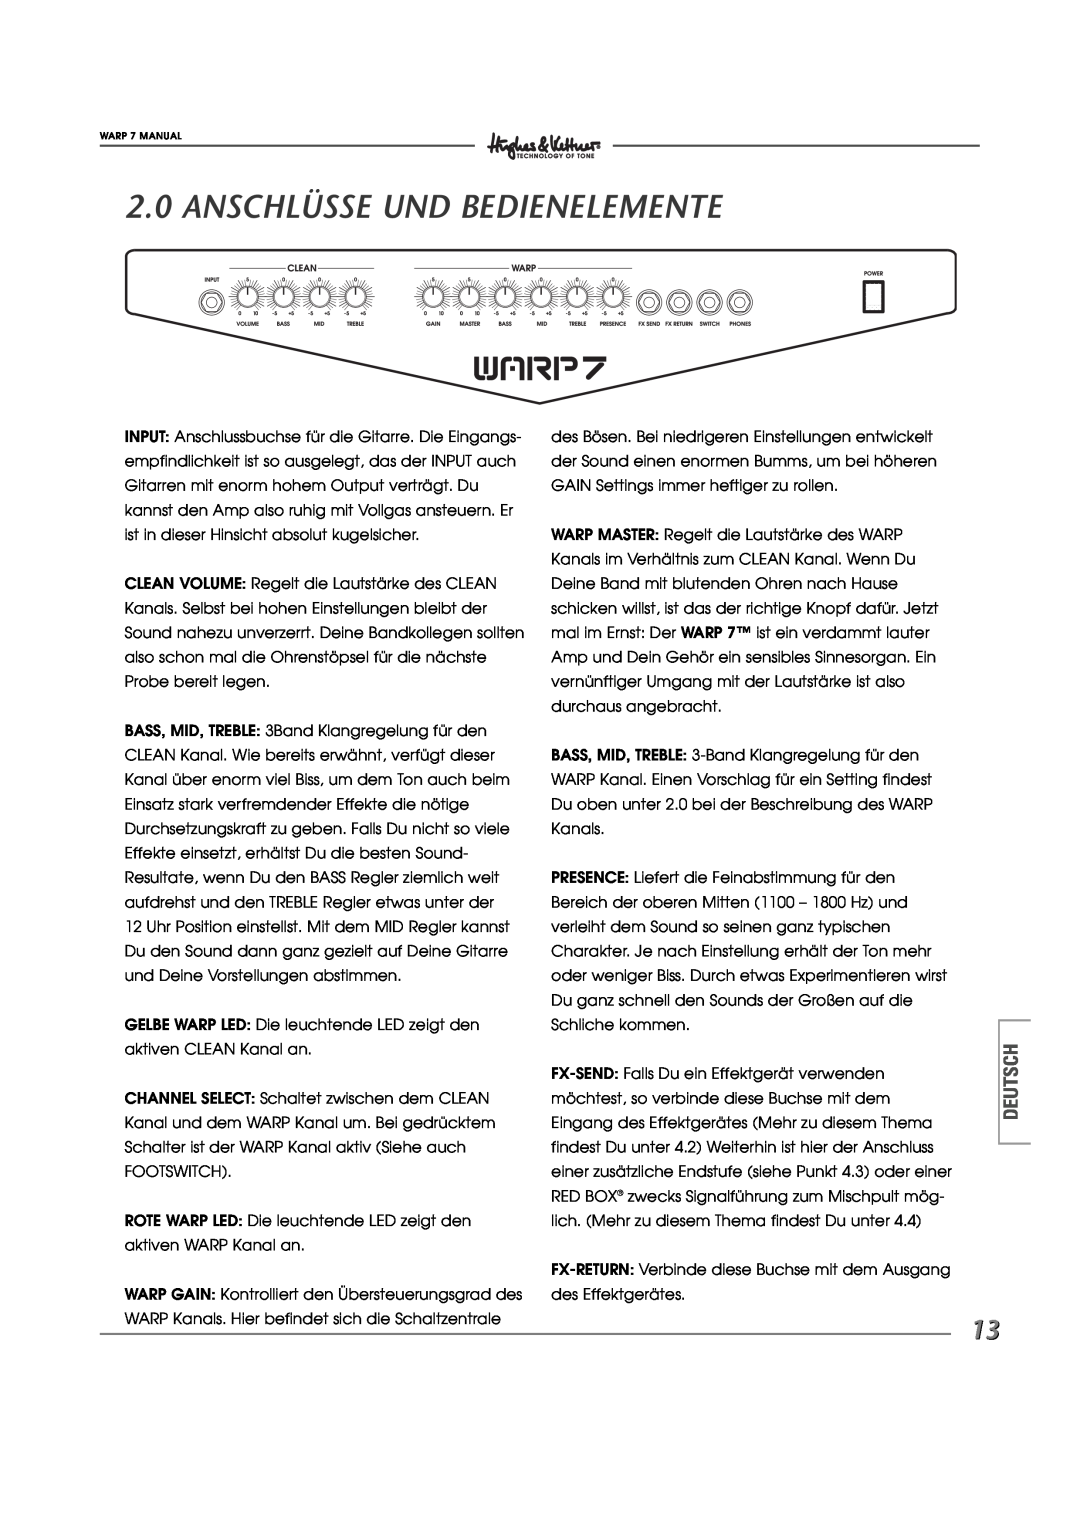 Hughes WARP7 manual Anschlüsse Und Bedienelemente, Deutsch 